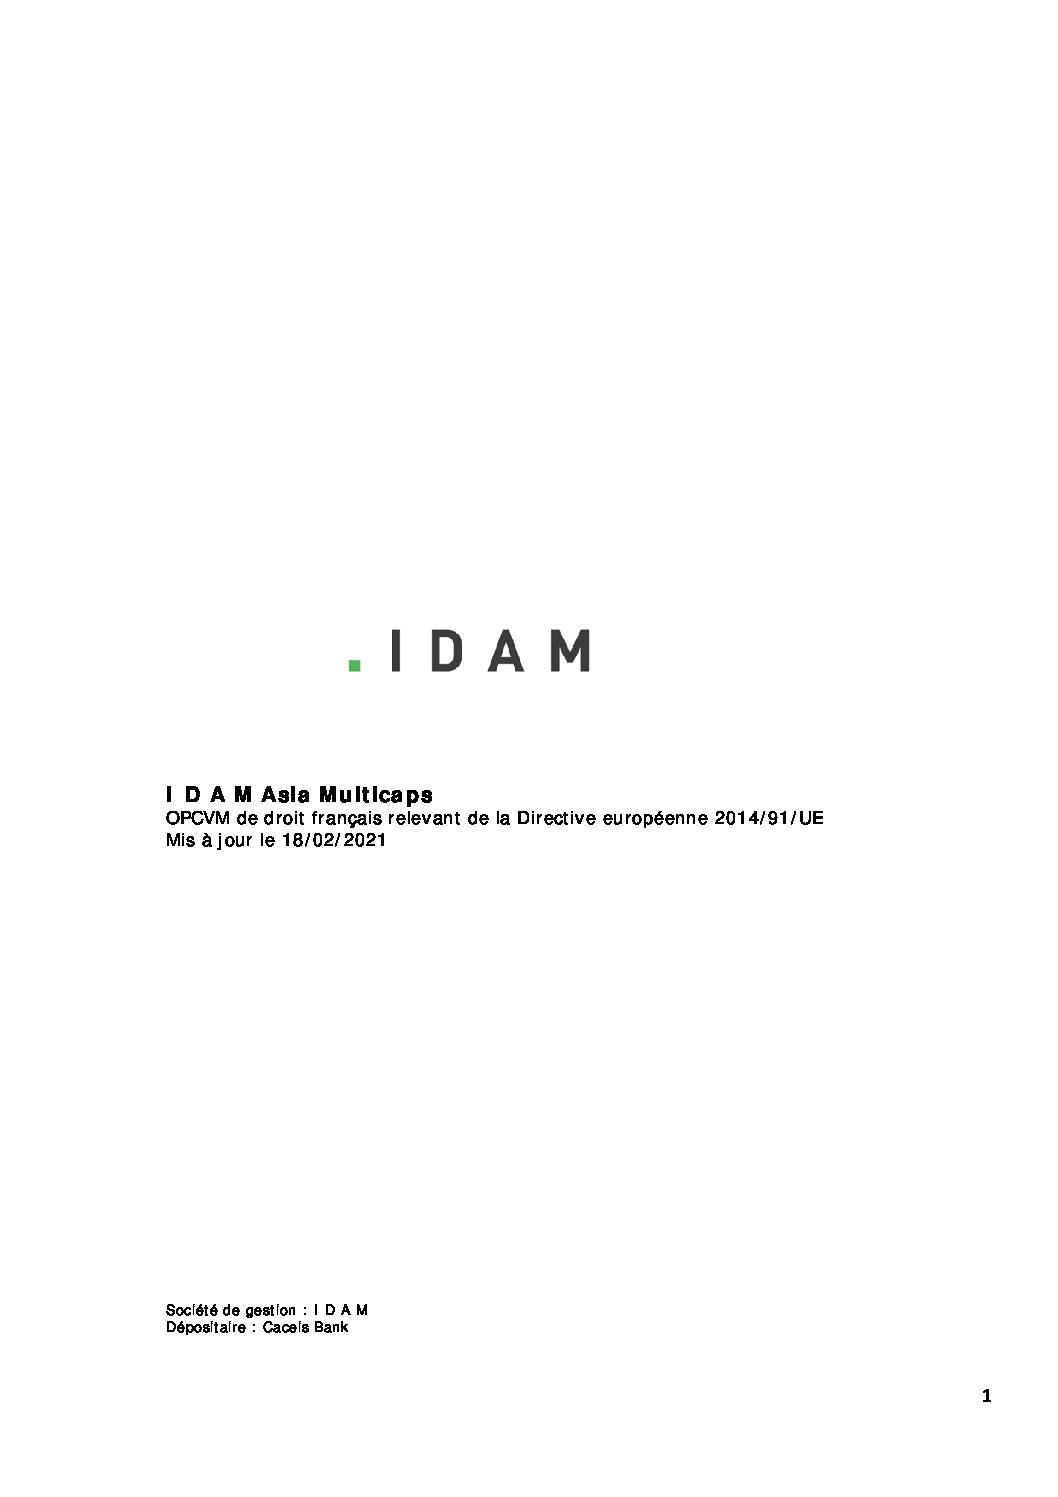 220218-Prospectus-IDAM-ASIA-MULTICAPS-pdf